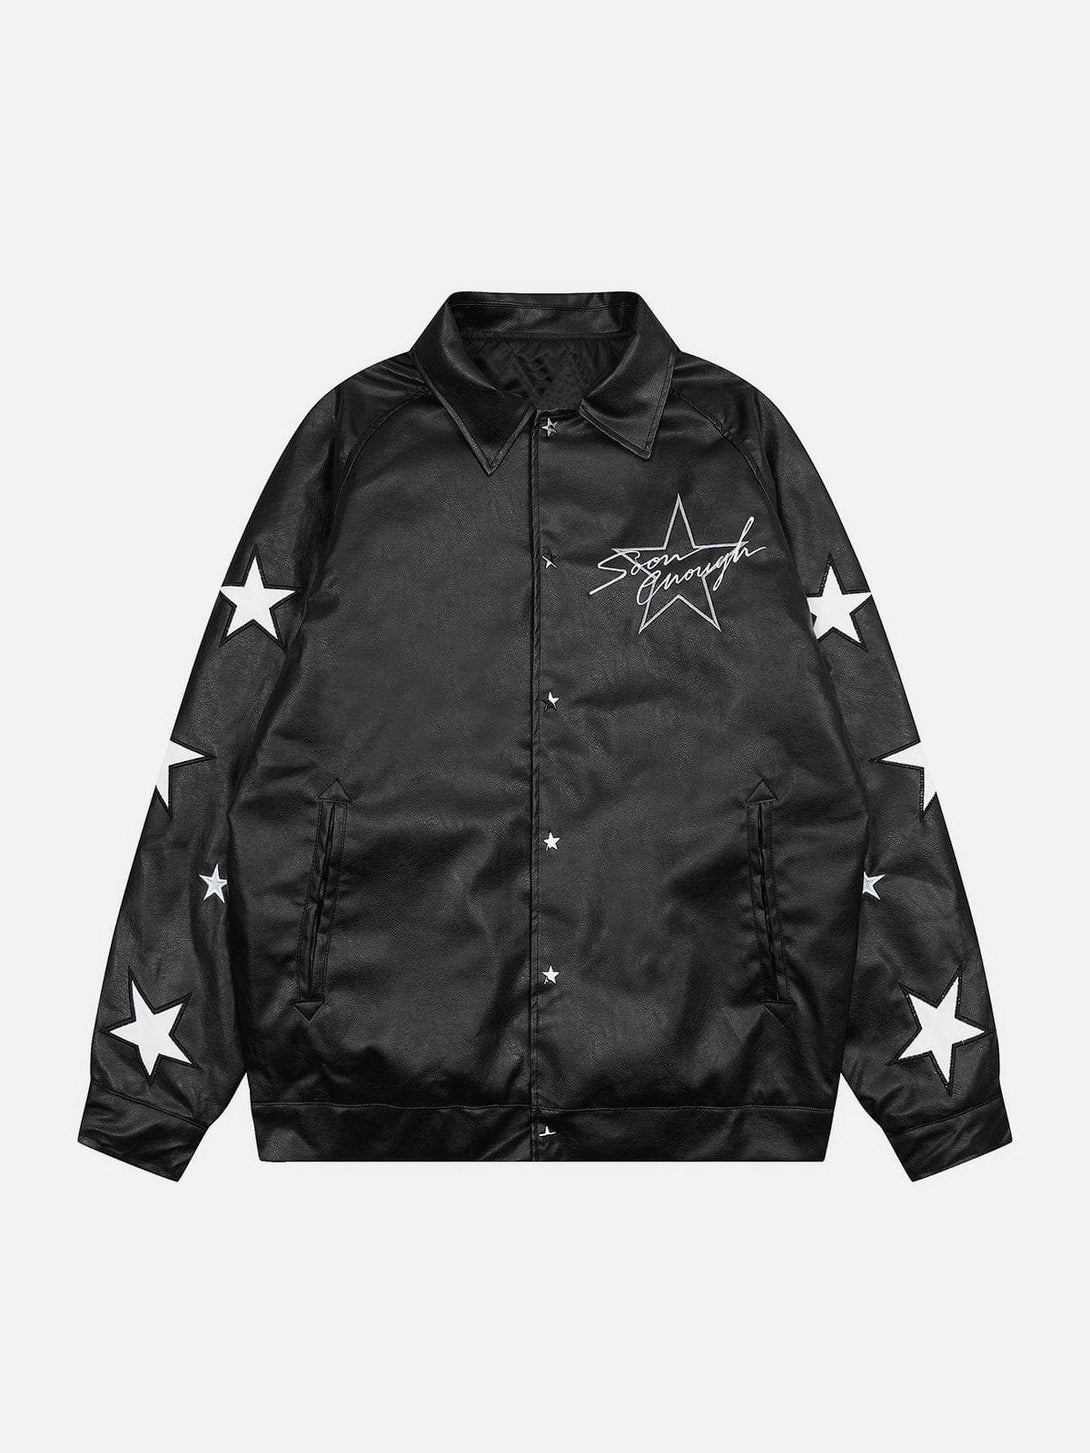 AlanBalen® - Star Embroidery Leather Jacket AlanBalen